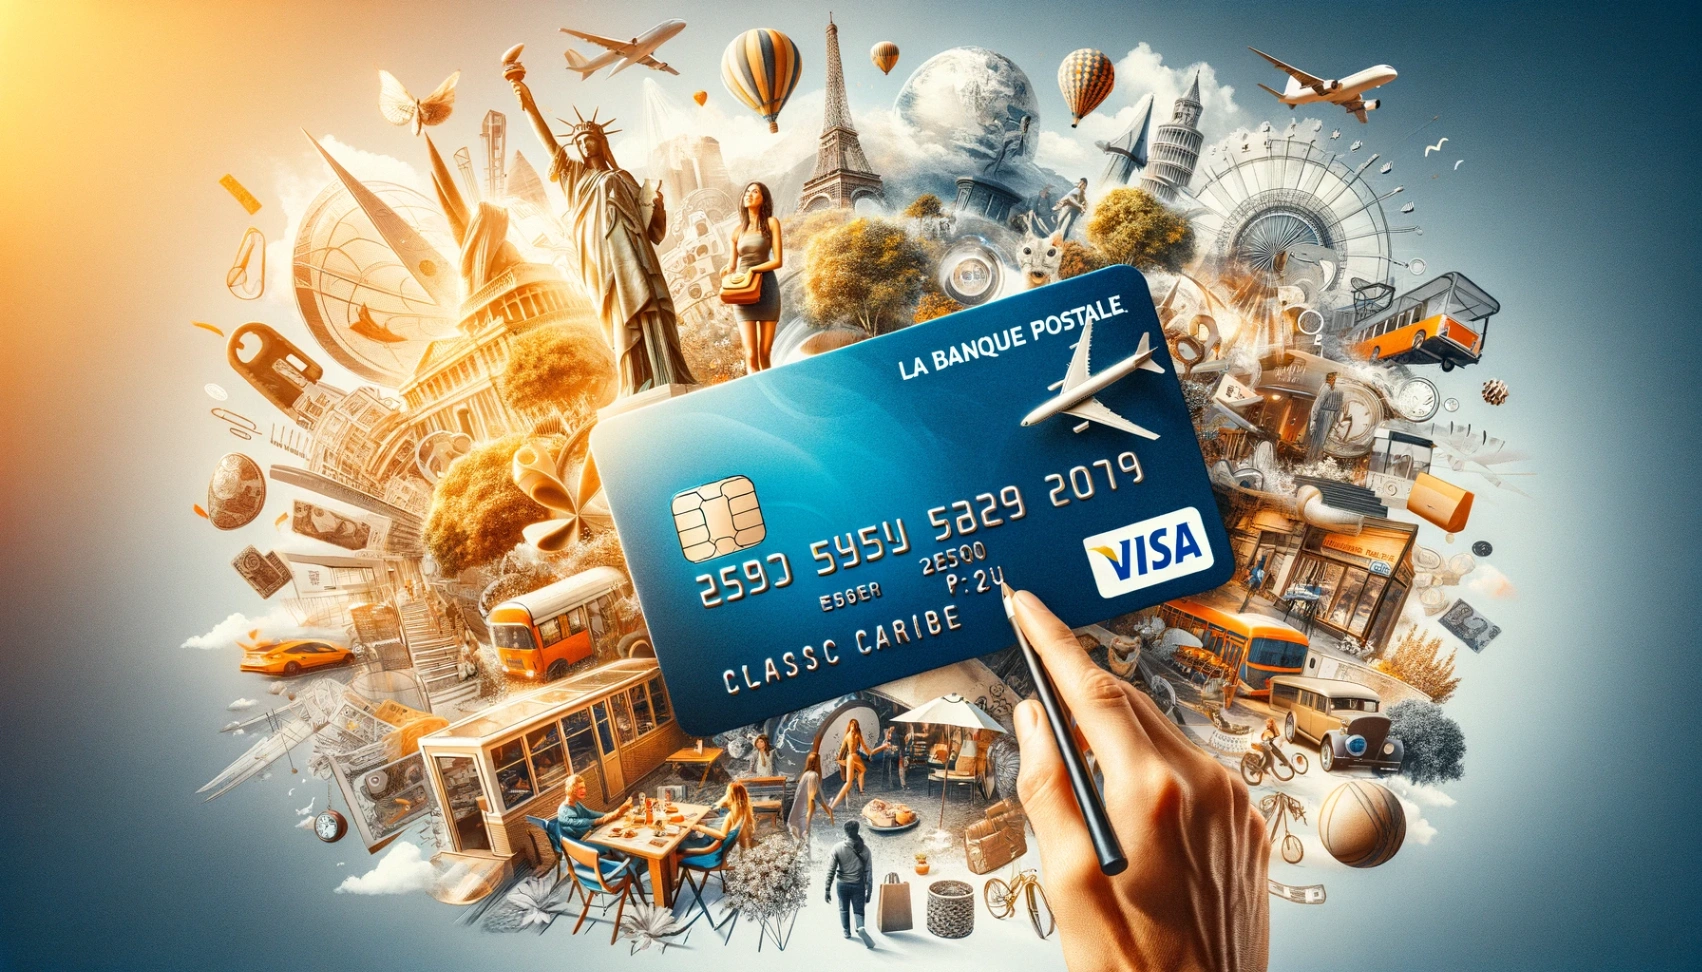 Apprenez comment demander la carte Visa Classic en ligne à La Banque Postale